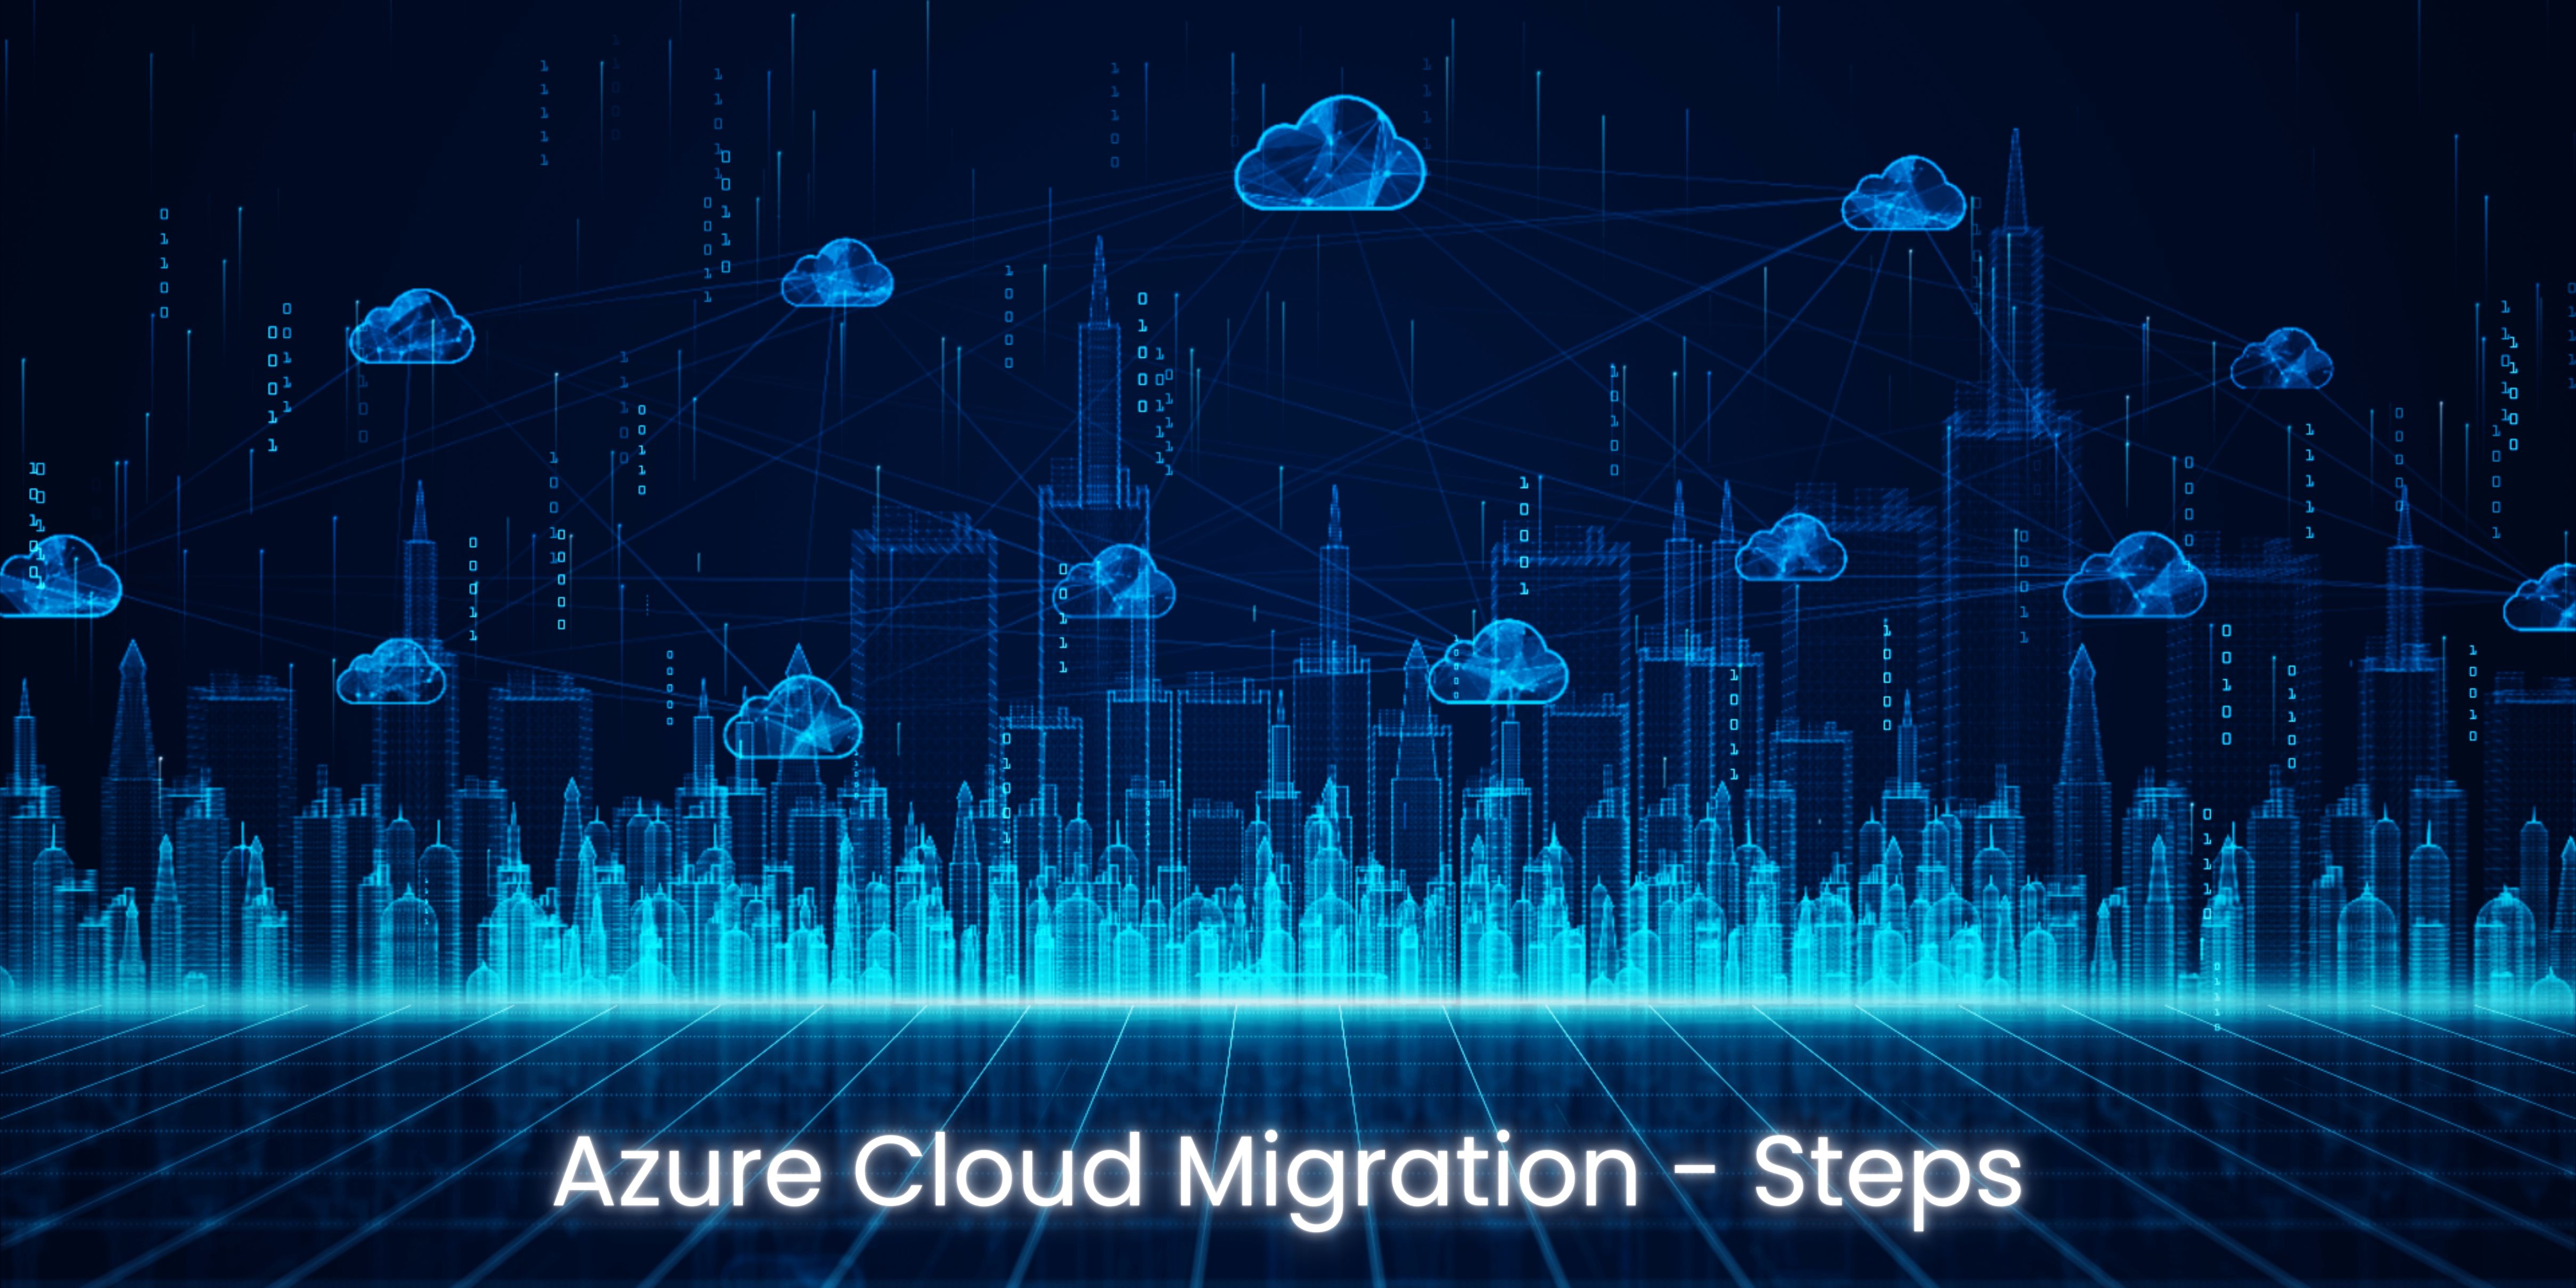 Azure Cloud Migration - Steps